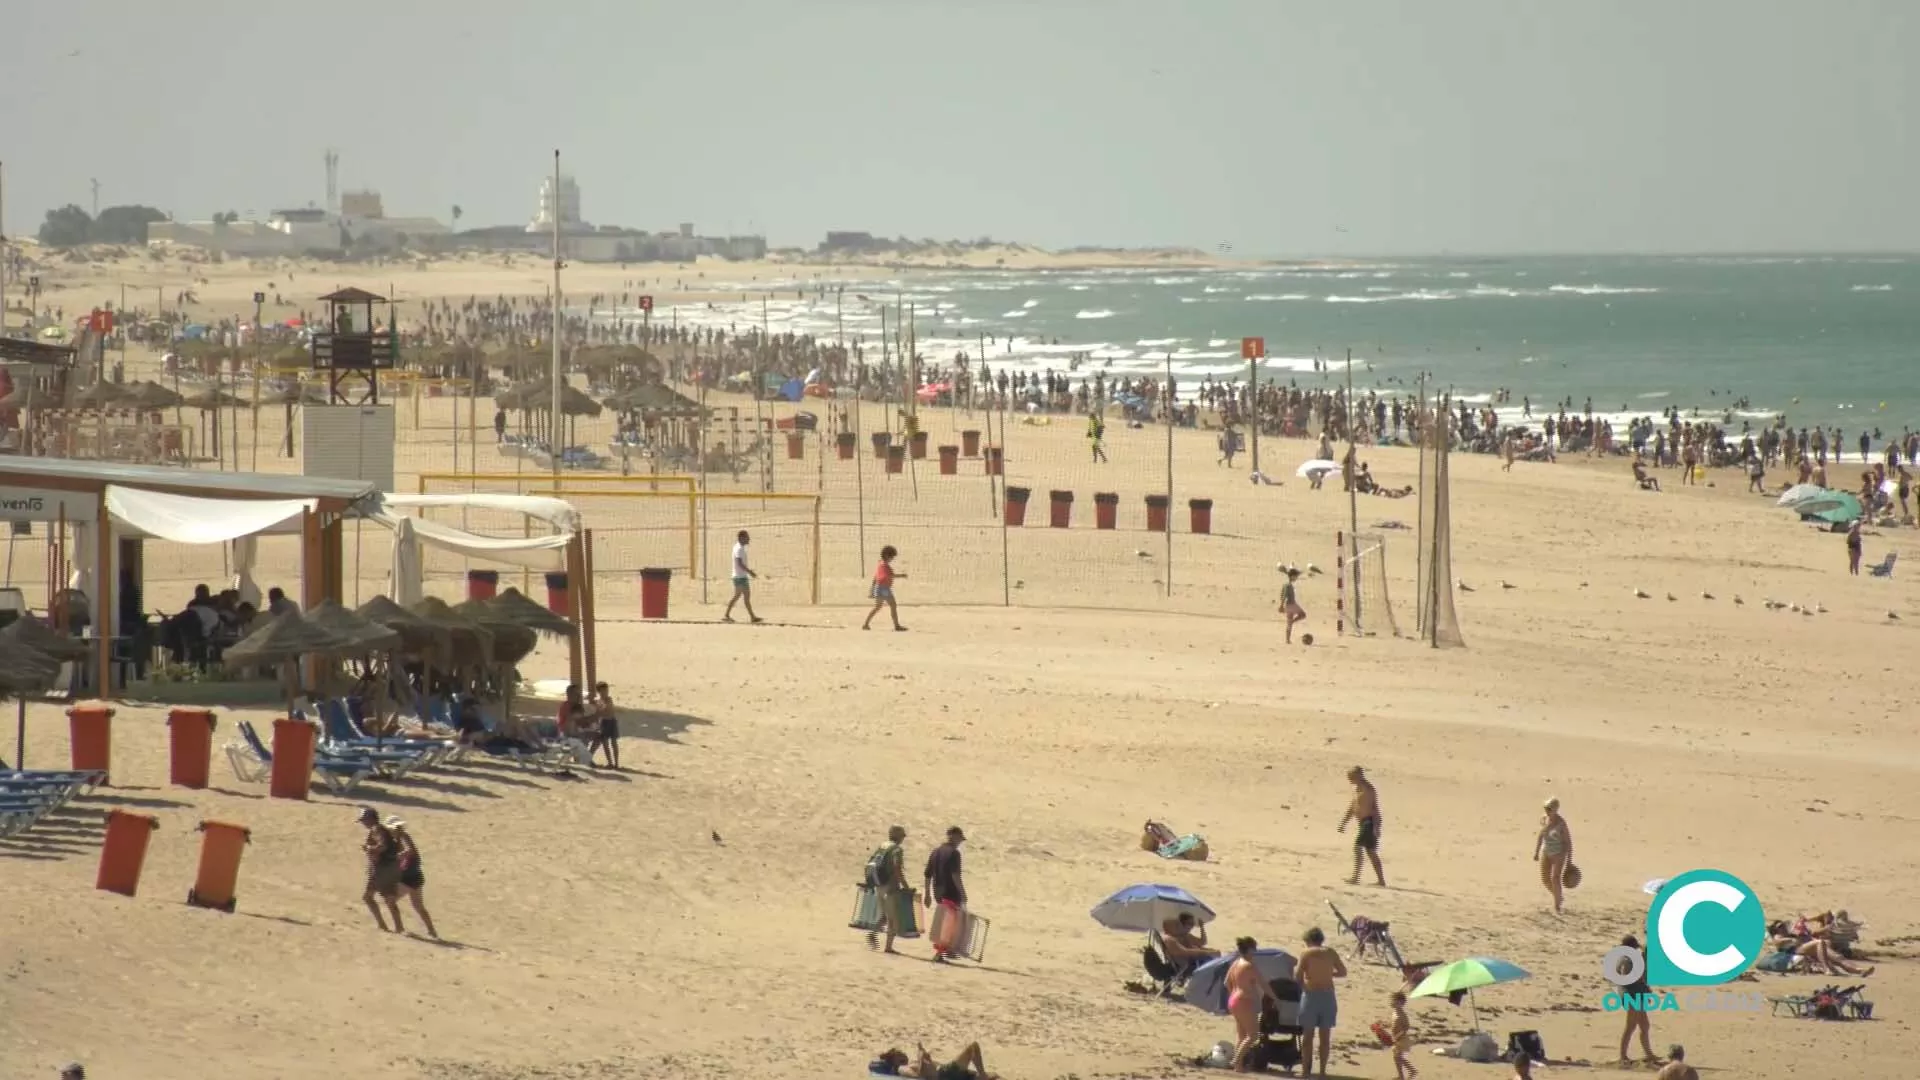 A pesar de la incomodidad del levante, las playas de Cádiz se han llenado de bañistas este primer fin de semana del verano